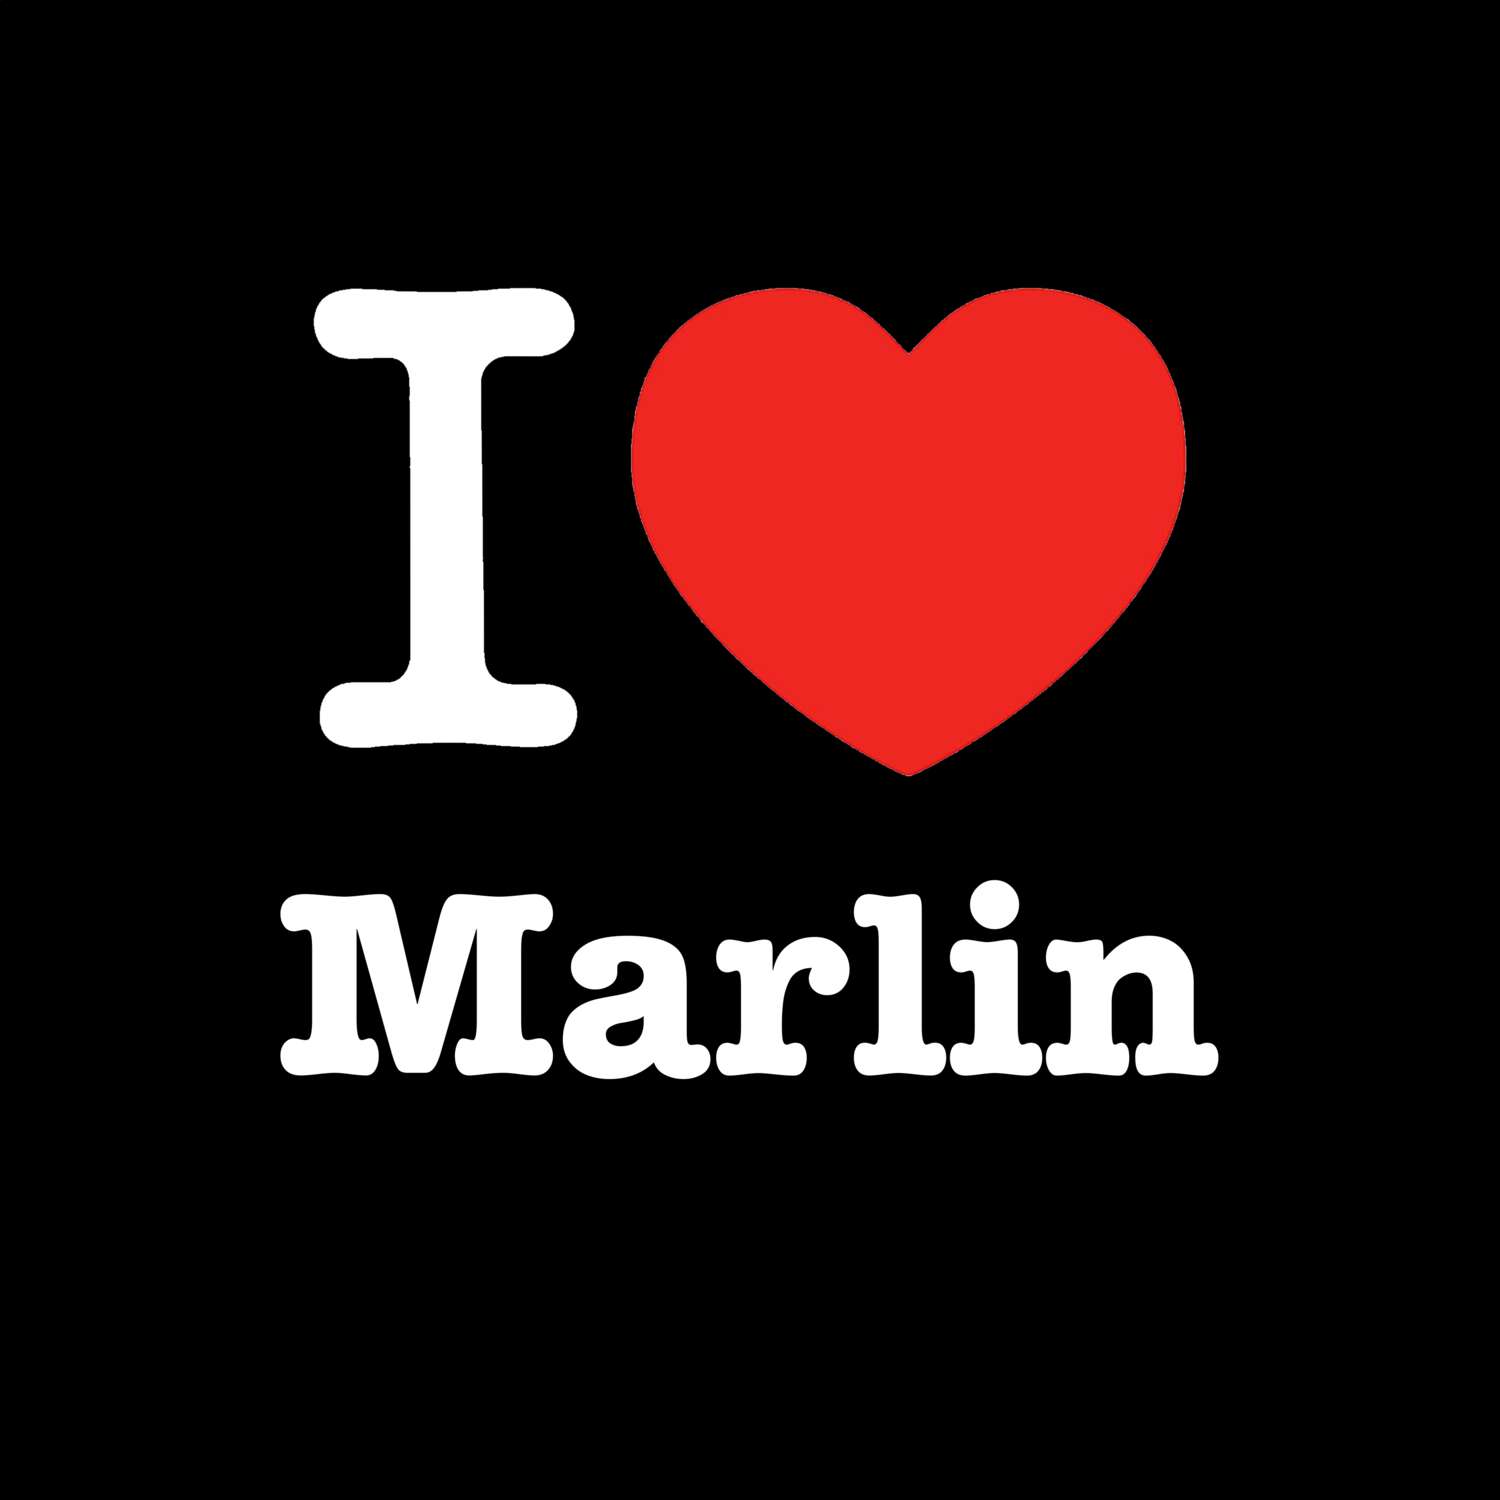 Marlin T-Shirt »I love«